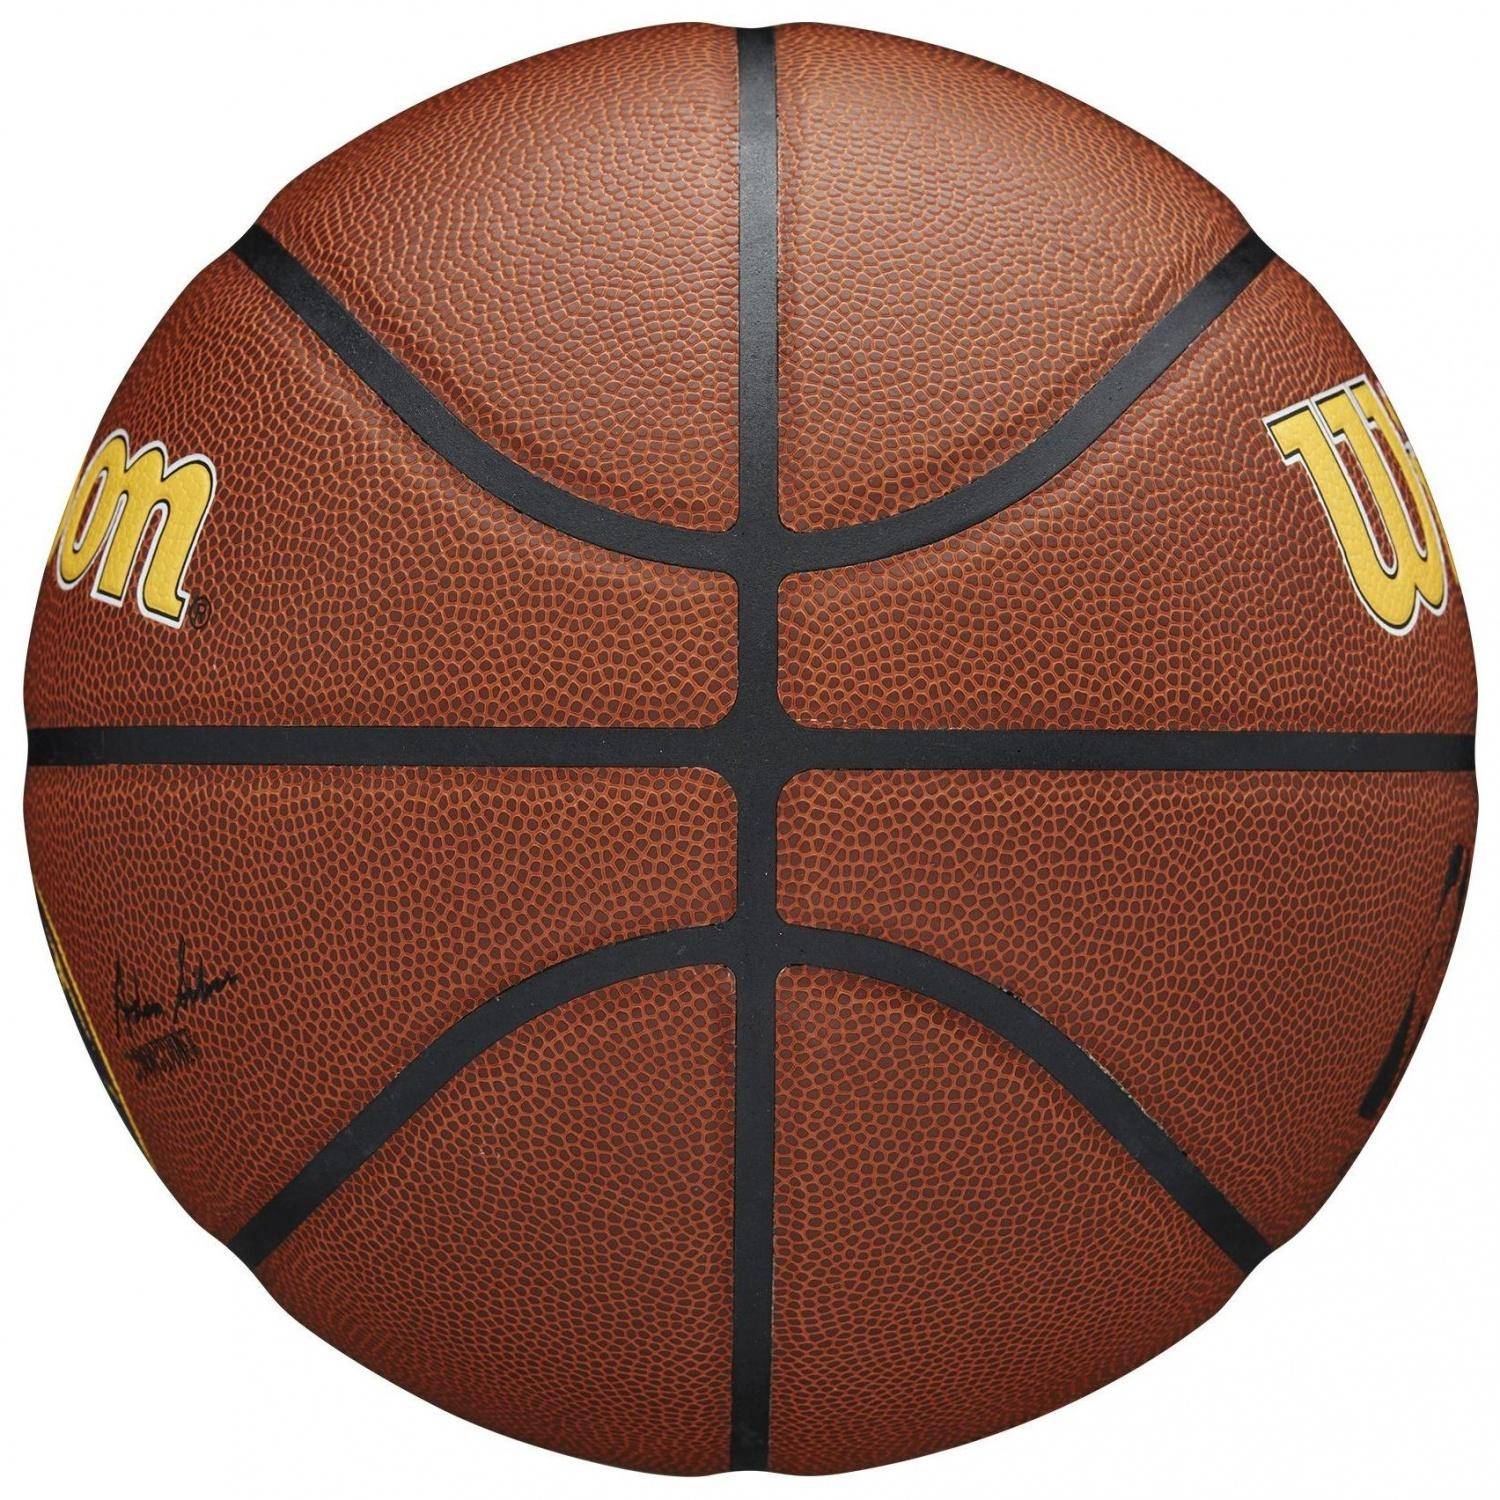 Ballon de Basket Basketball en Cuir Orange Taille 7 équipement Officiel Sport 